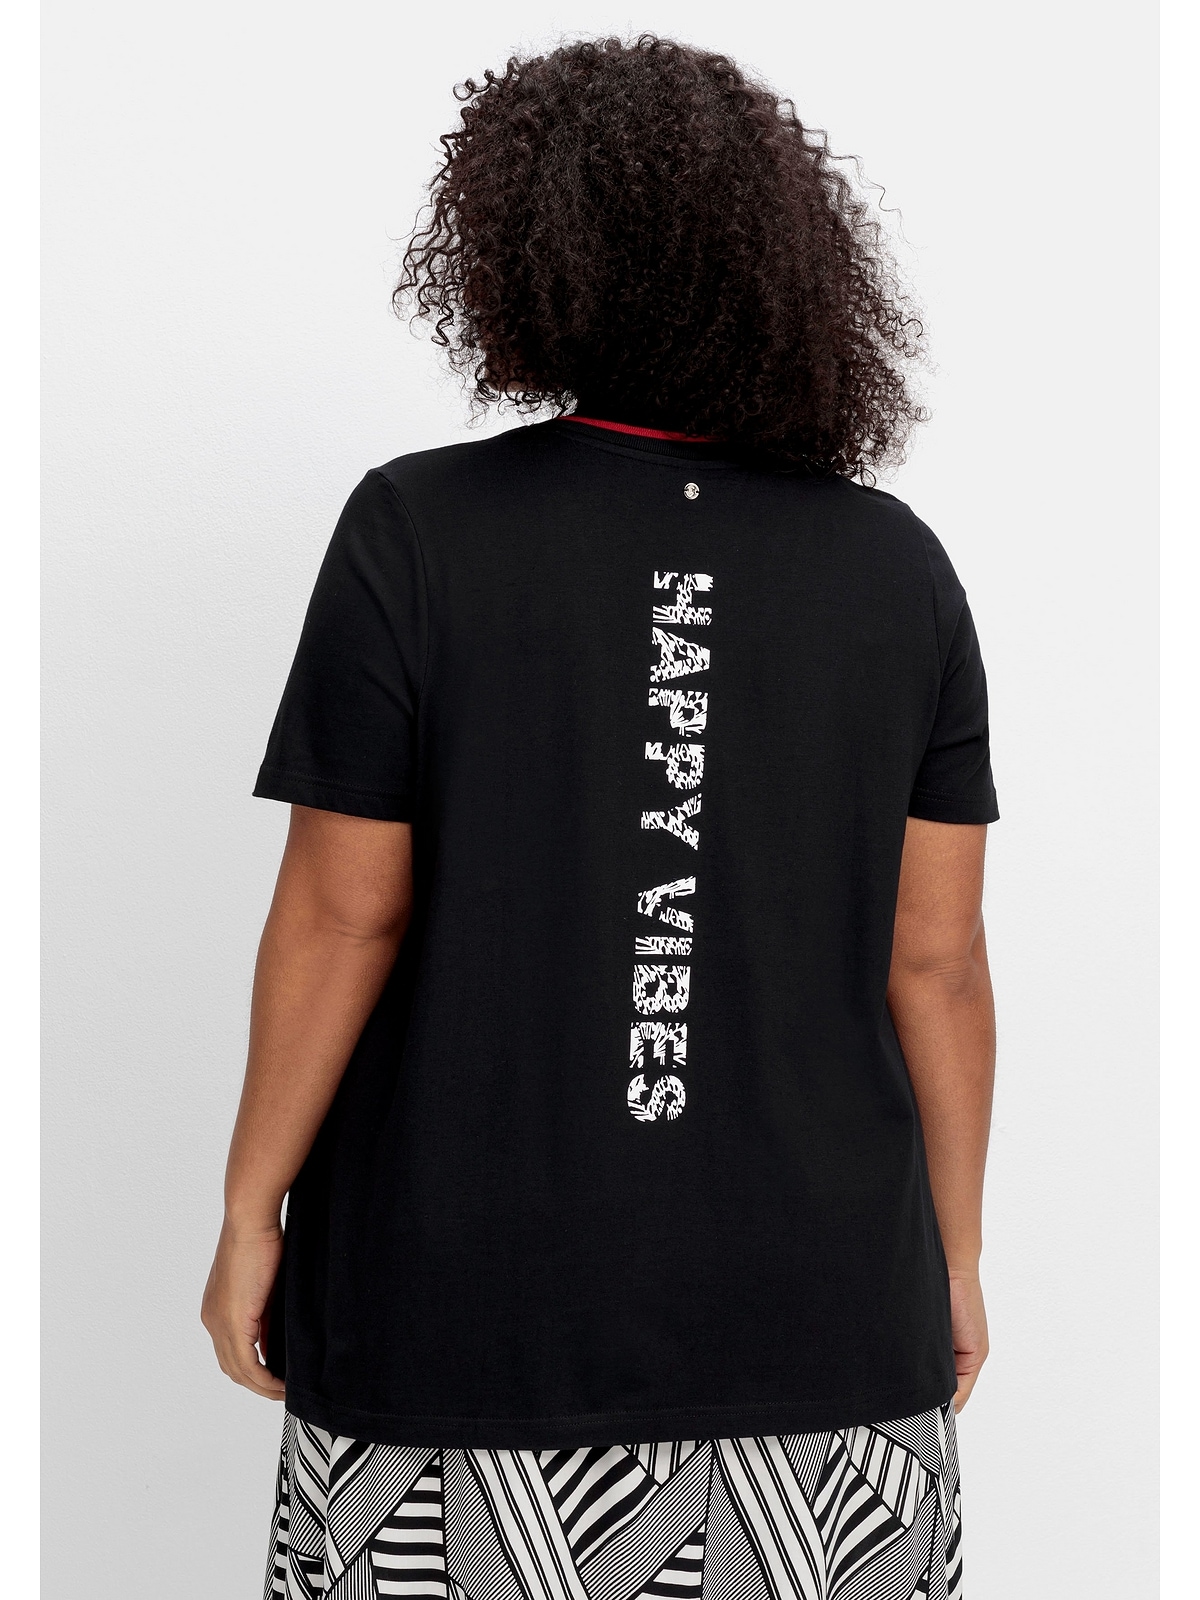 shoppen Statementprint dem Sheego auf T-Shirt Größen«, mit »Große Rücken